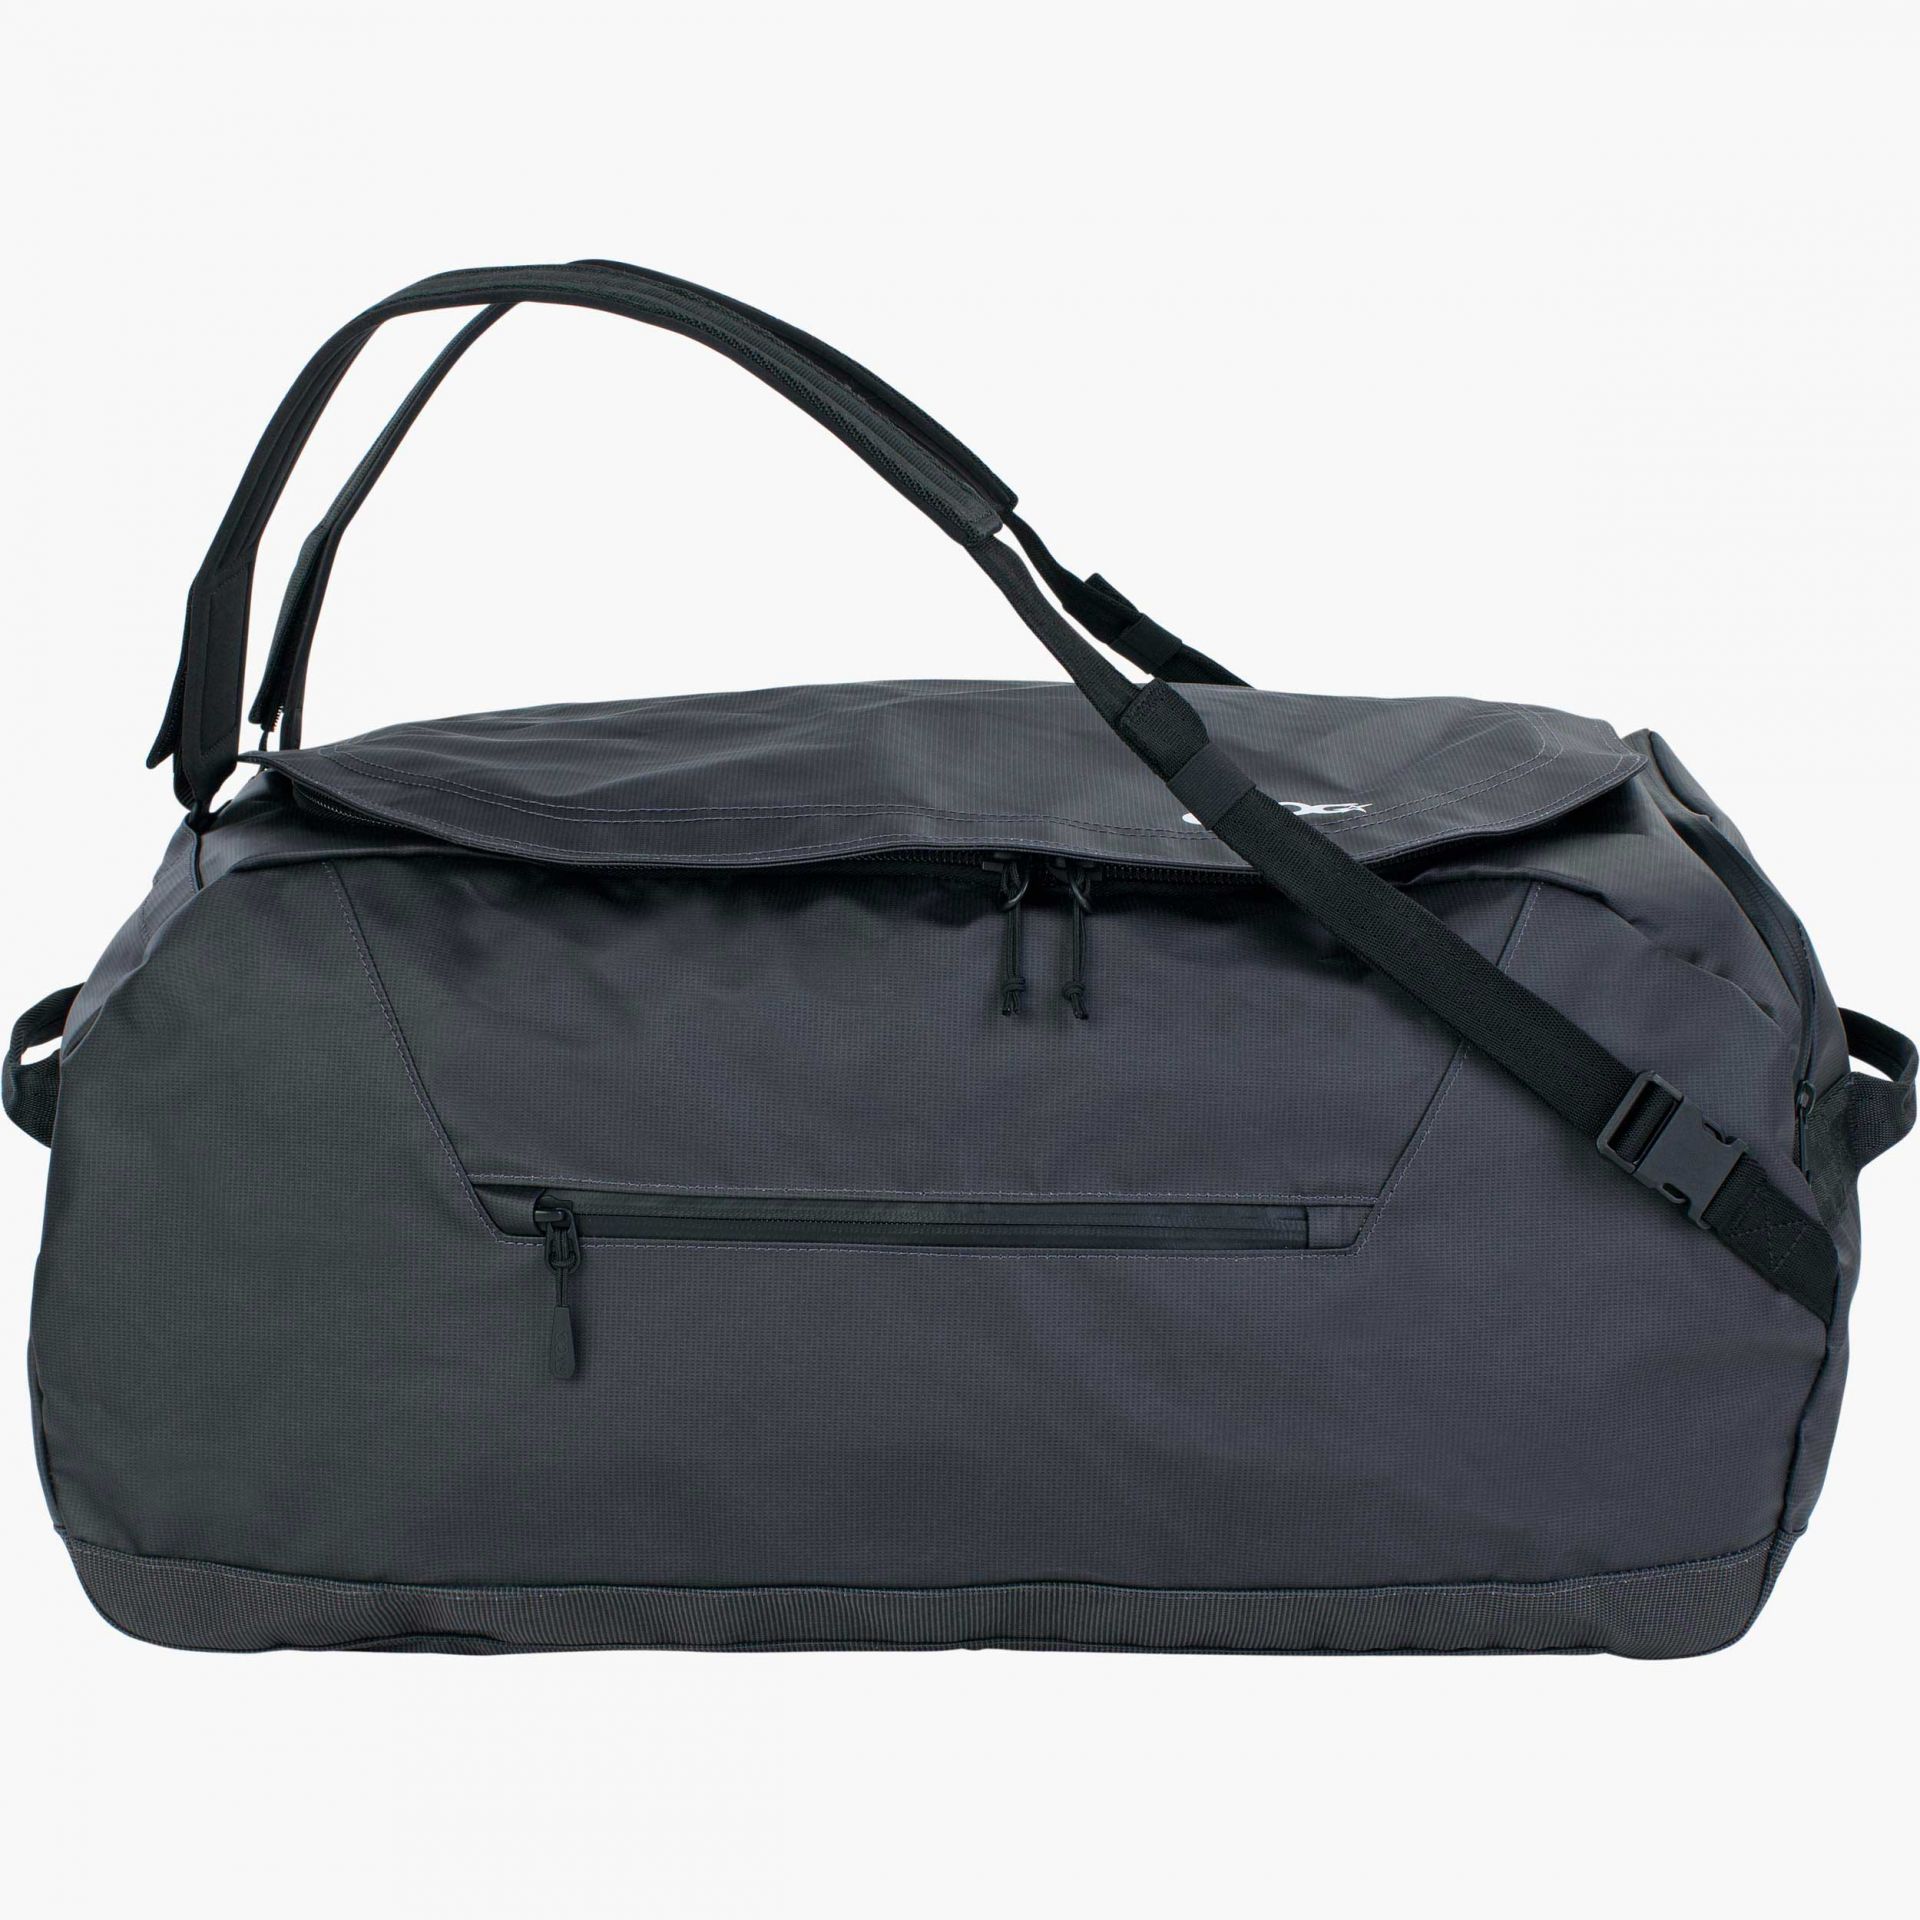 DUFFLE BAG 60 | Carbon Grey - Black | 60 l | 401220123